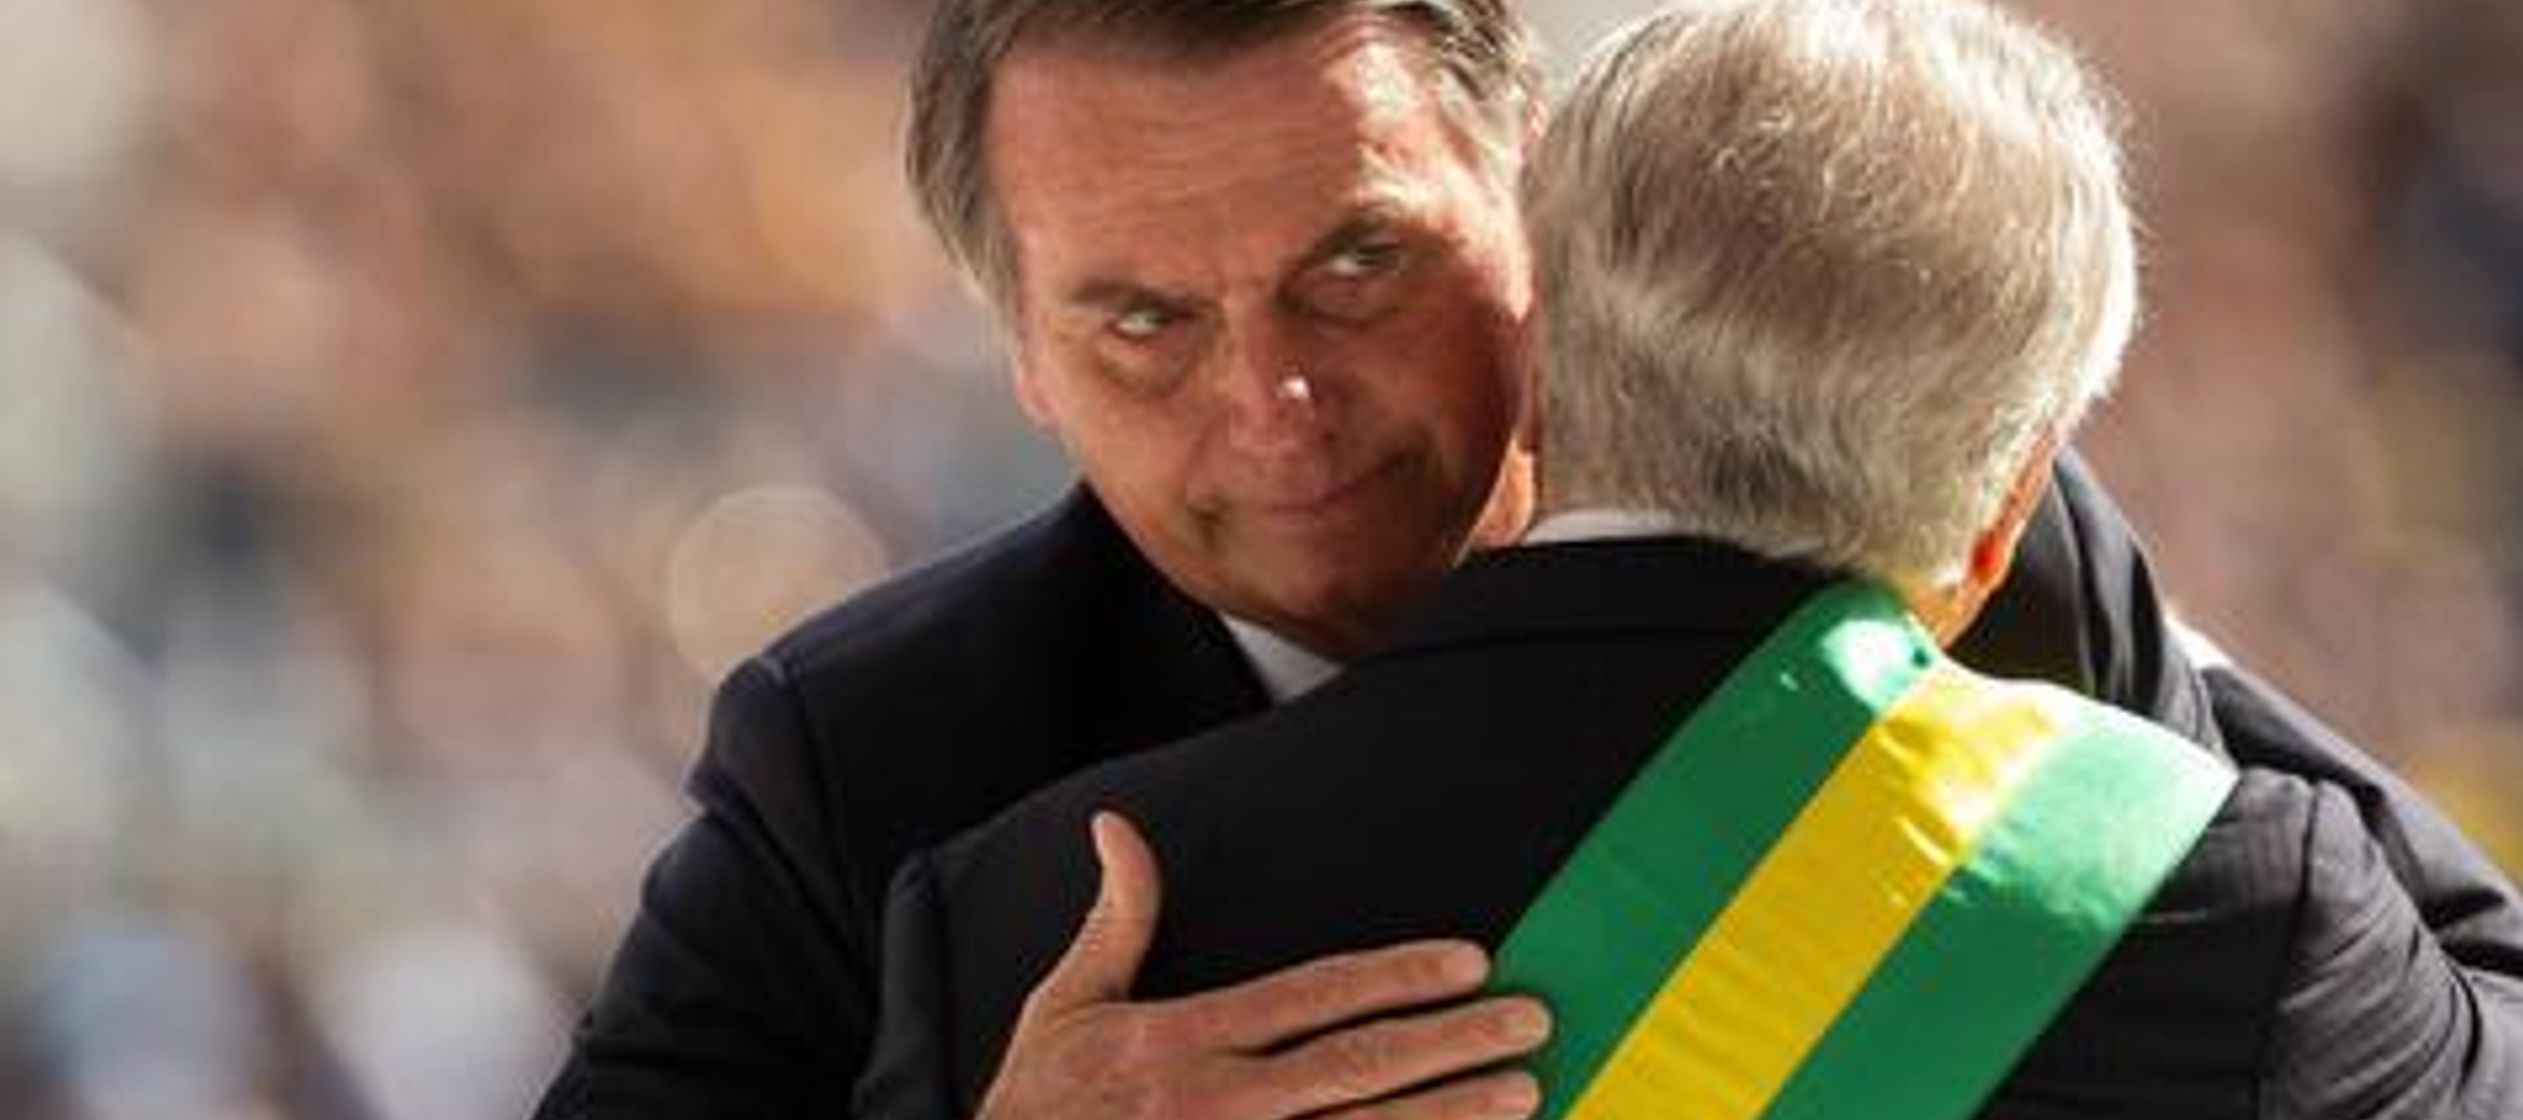 Temer entregó la faja presidencial a Bolsonaro el martes, y a partir de ese día...